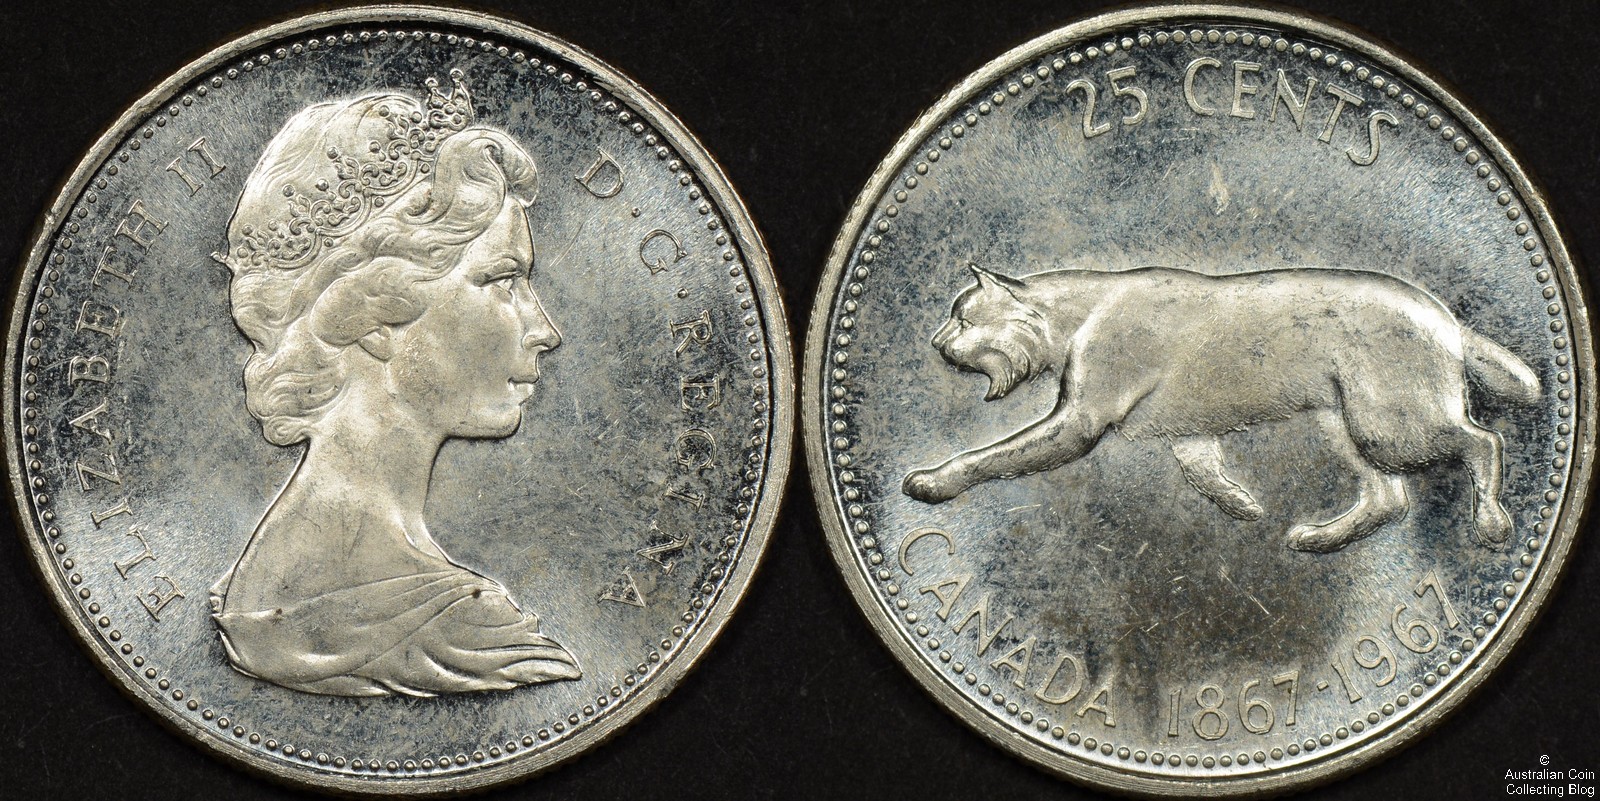 Canada 1967 25 Cent